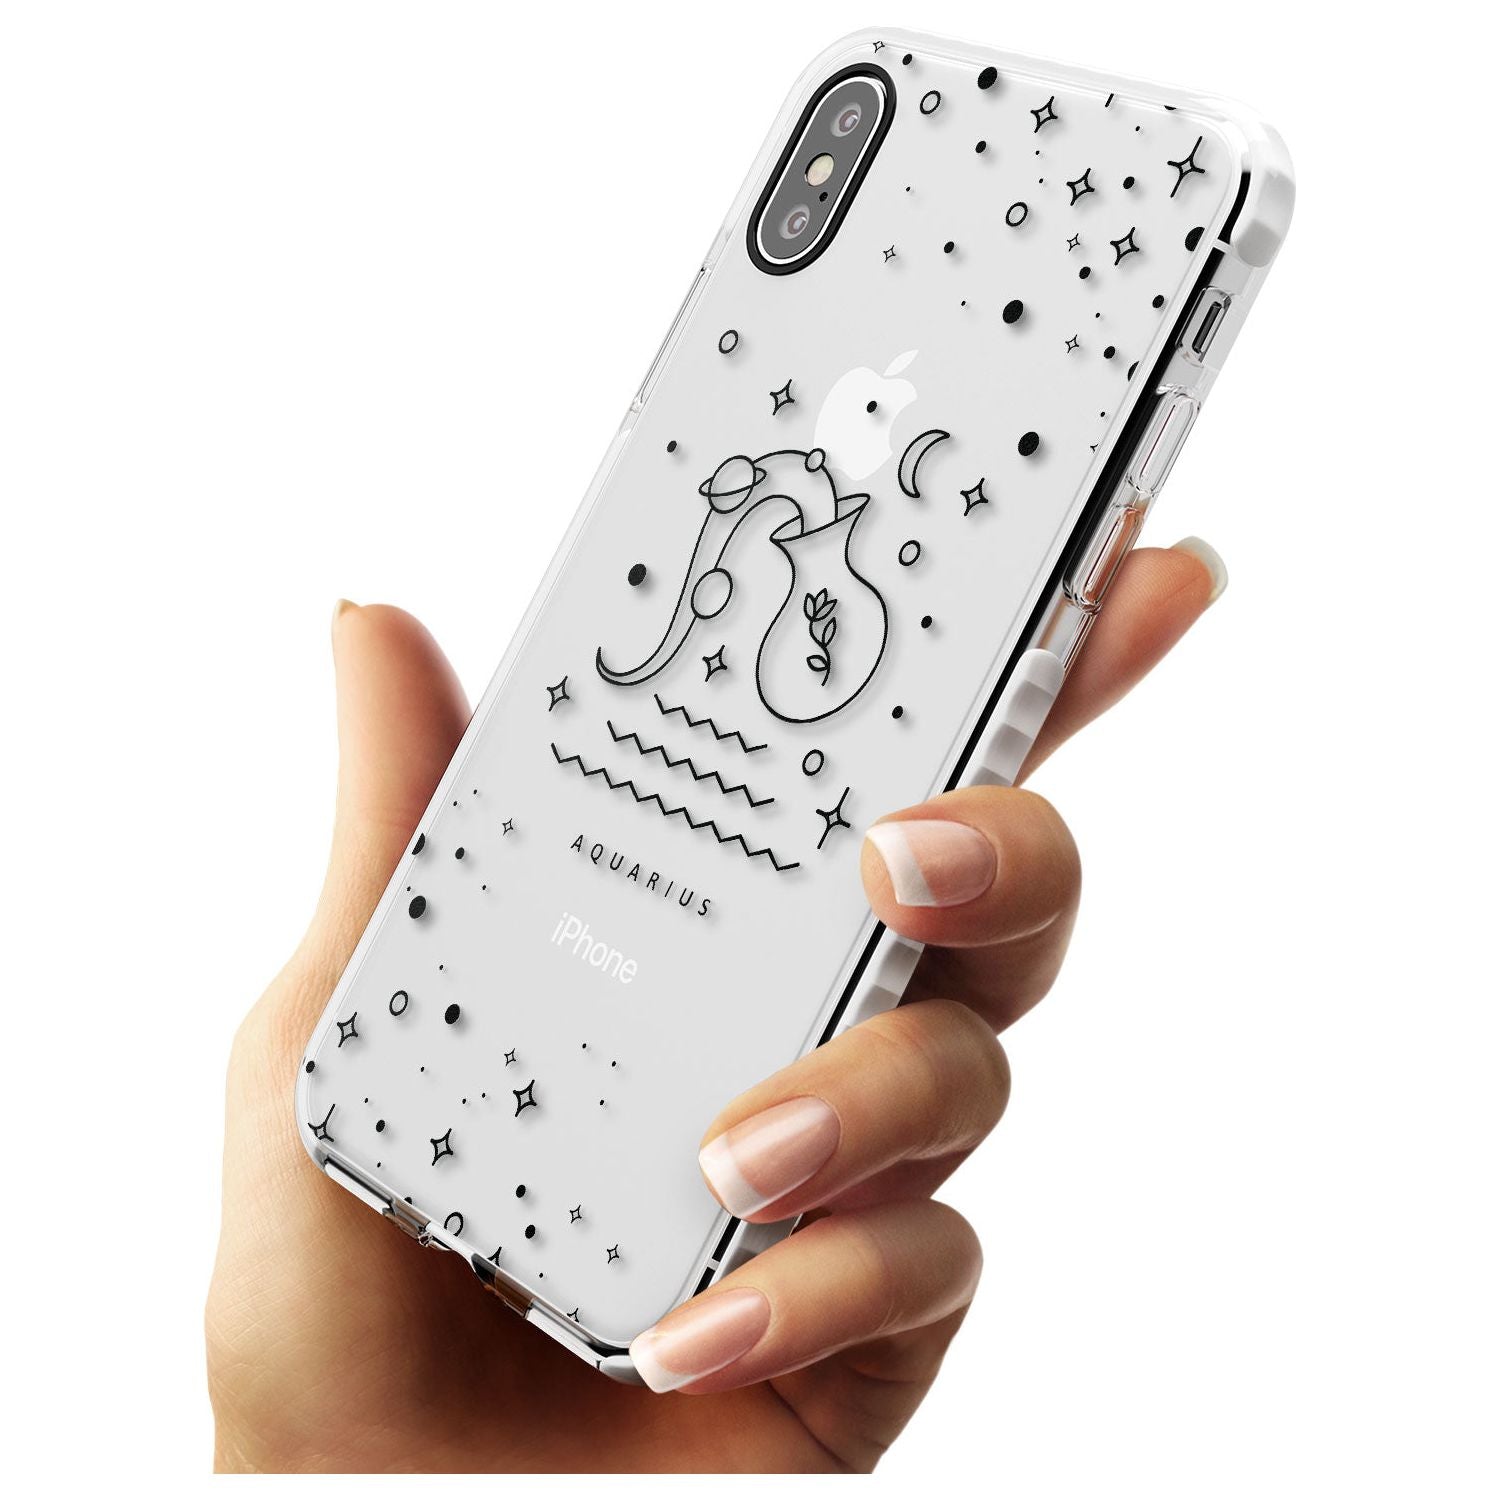 Aquarius Emblem - Transparent Design Impact Phone Case for iPhone X XS Max XR